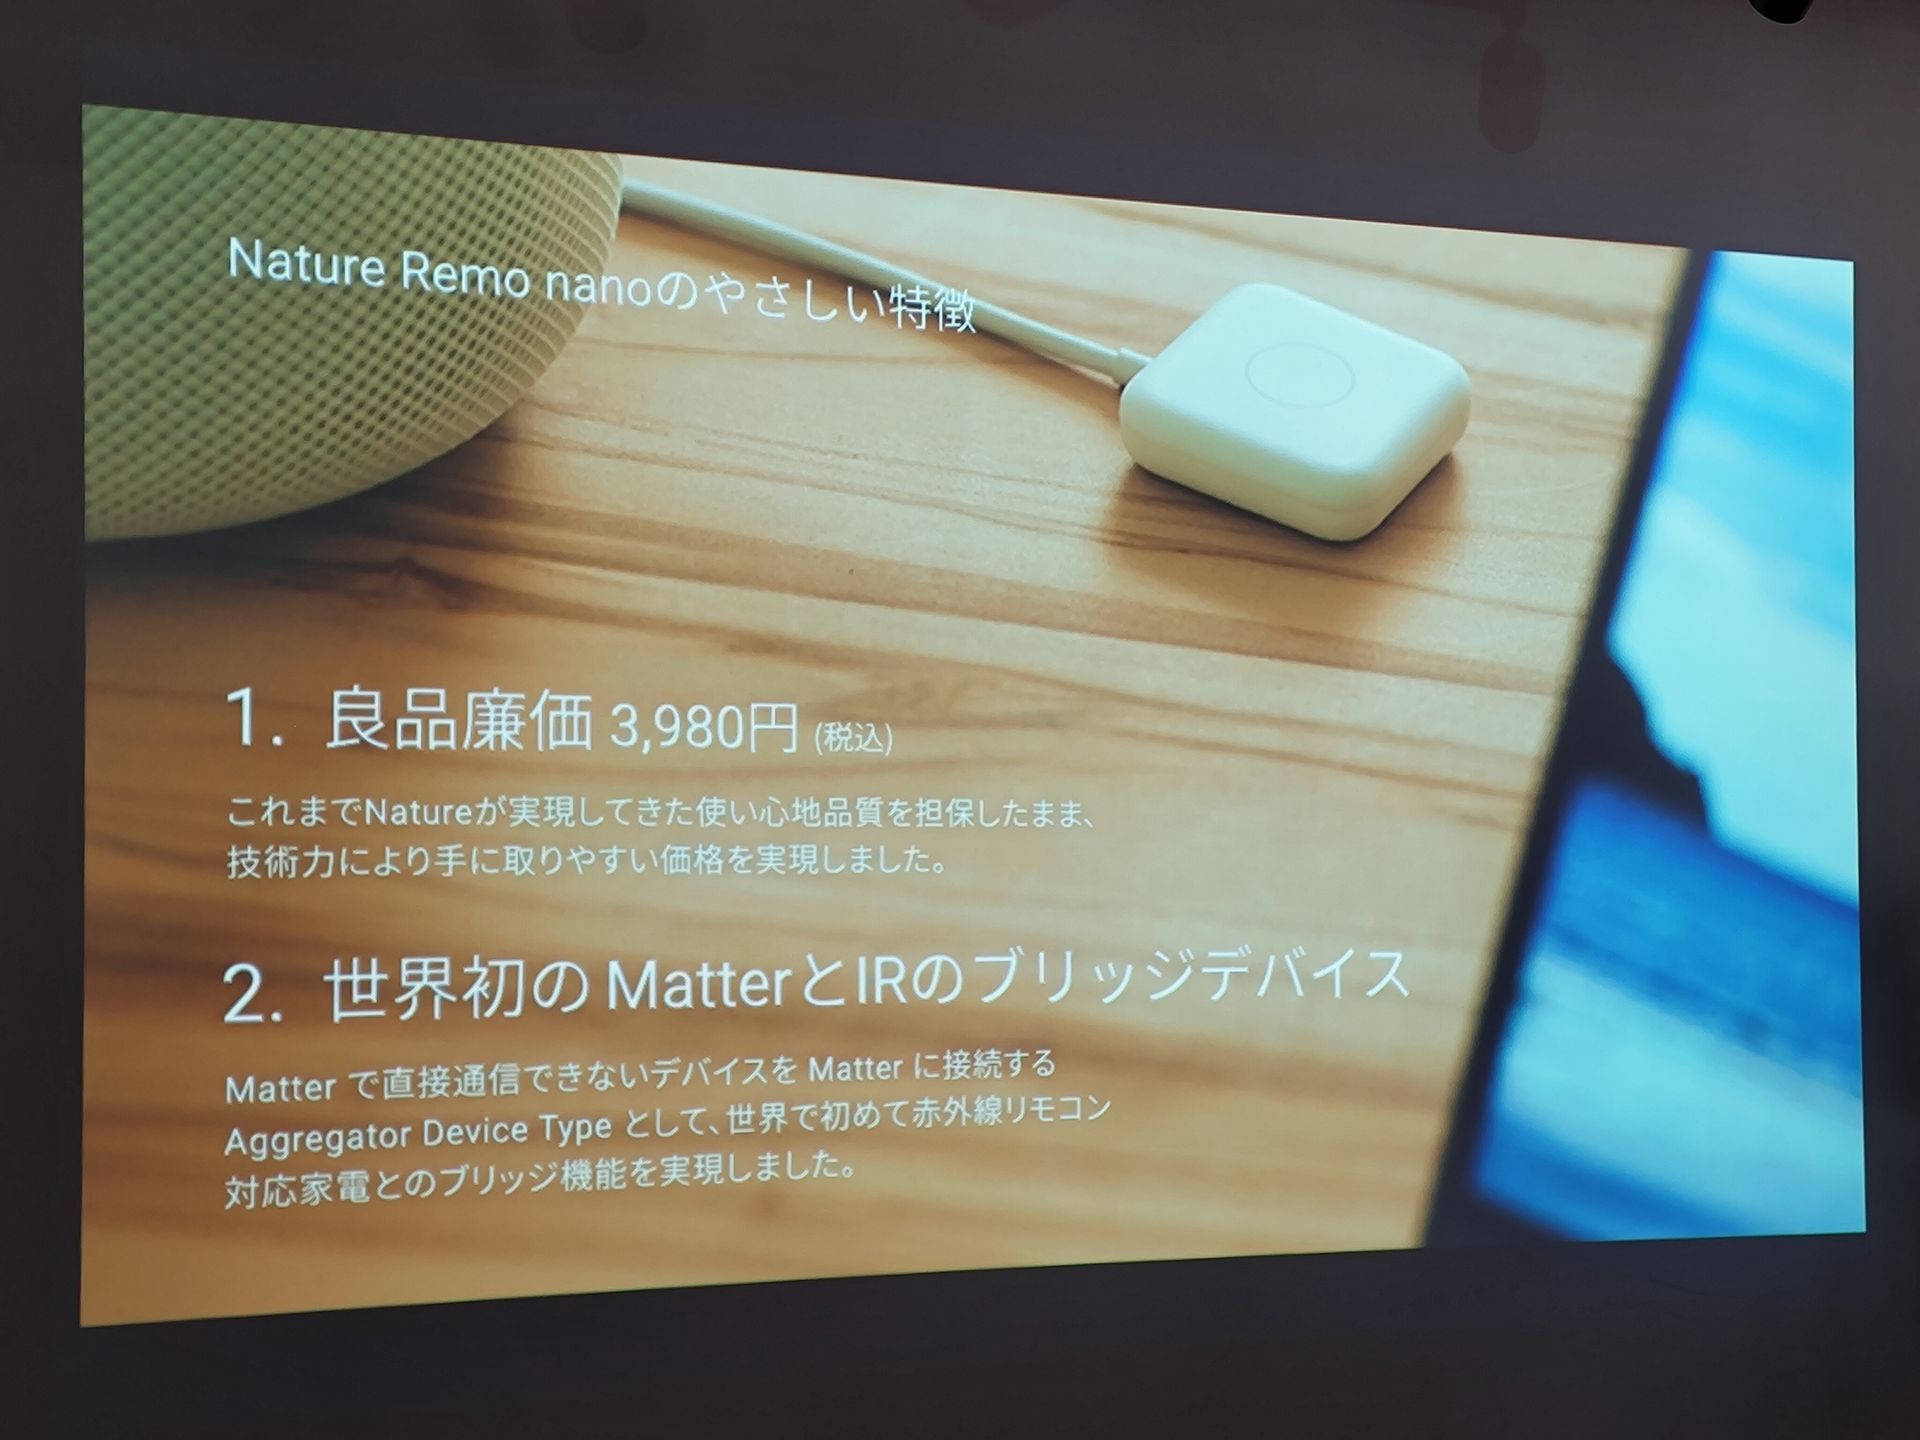 スマートリモコン「Nature Remo nano」発売、Matter対応で3980円 ...